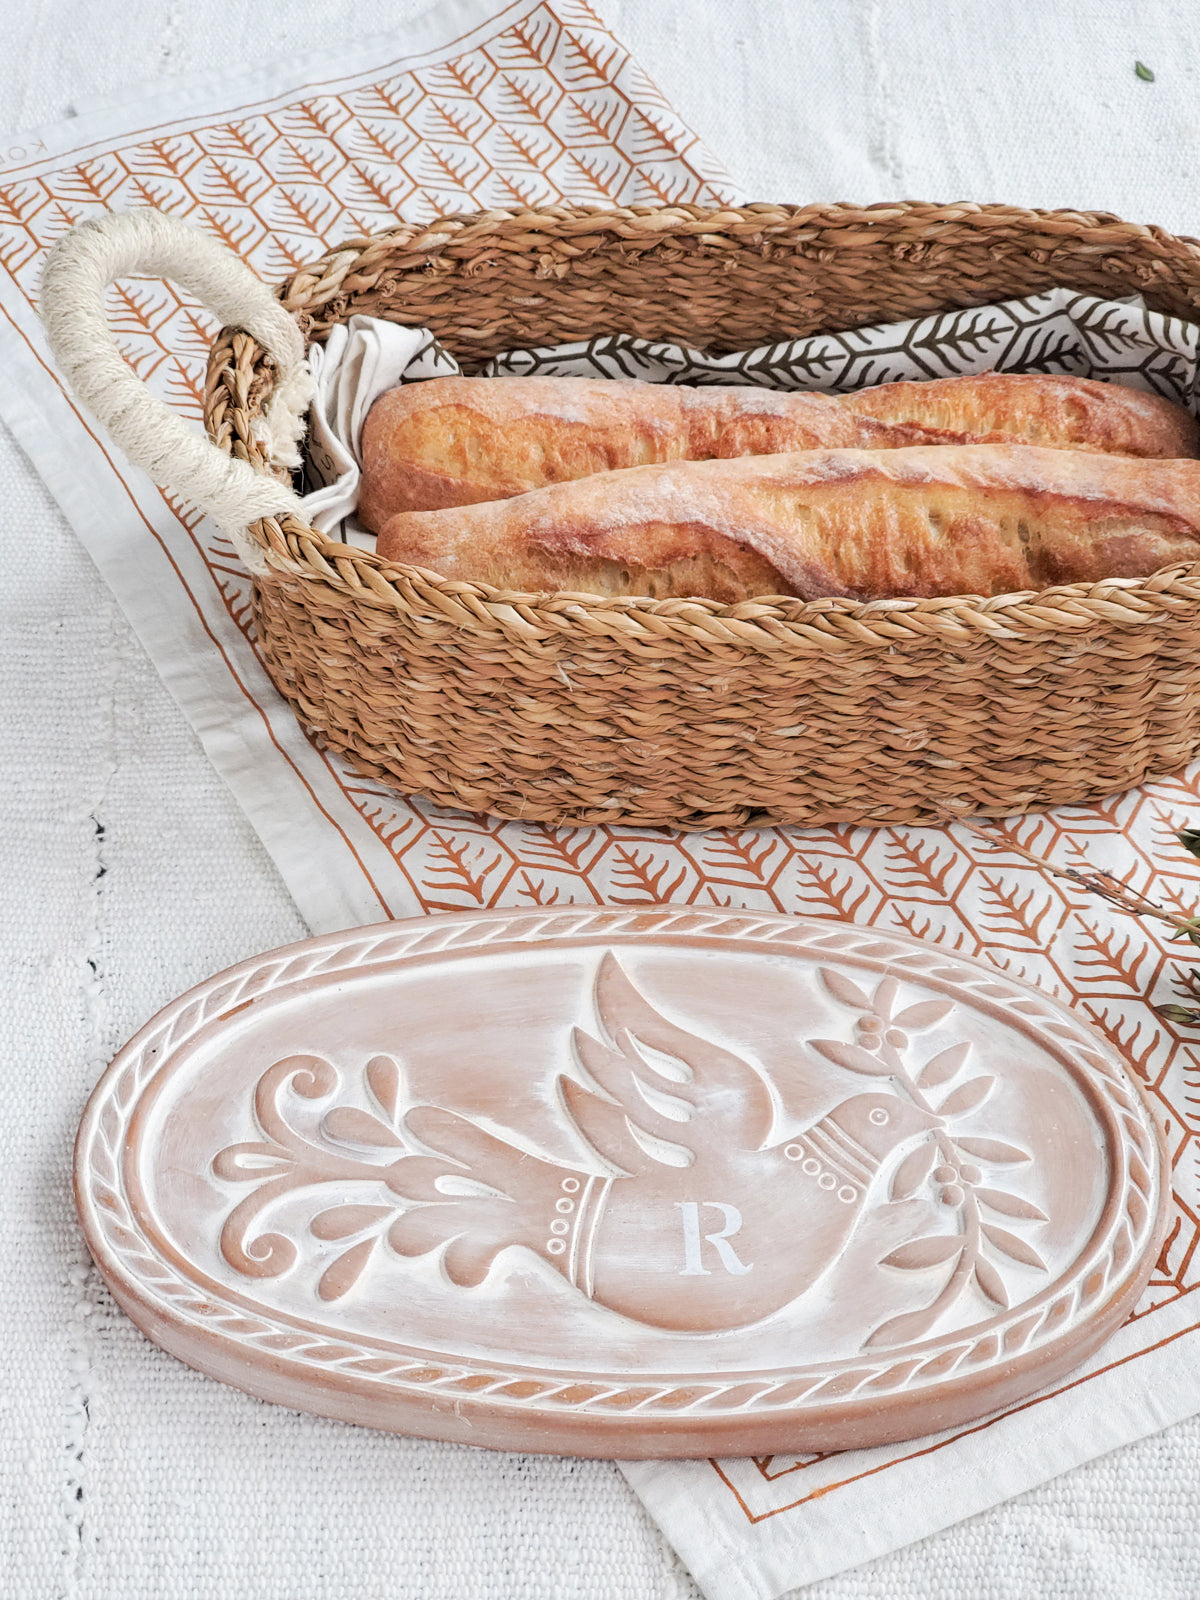 Handmade Bread Warmer & Wicker Basket - Bird Oval